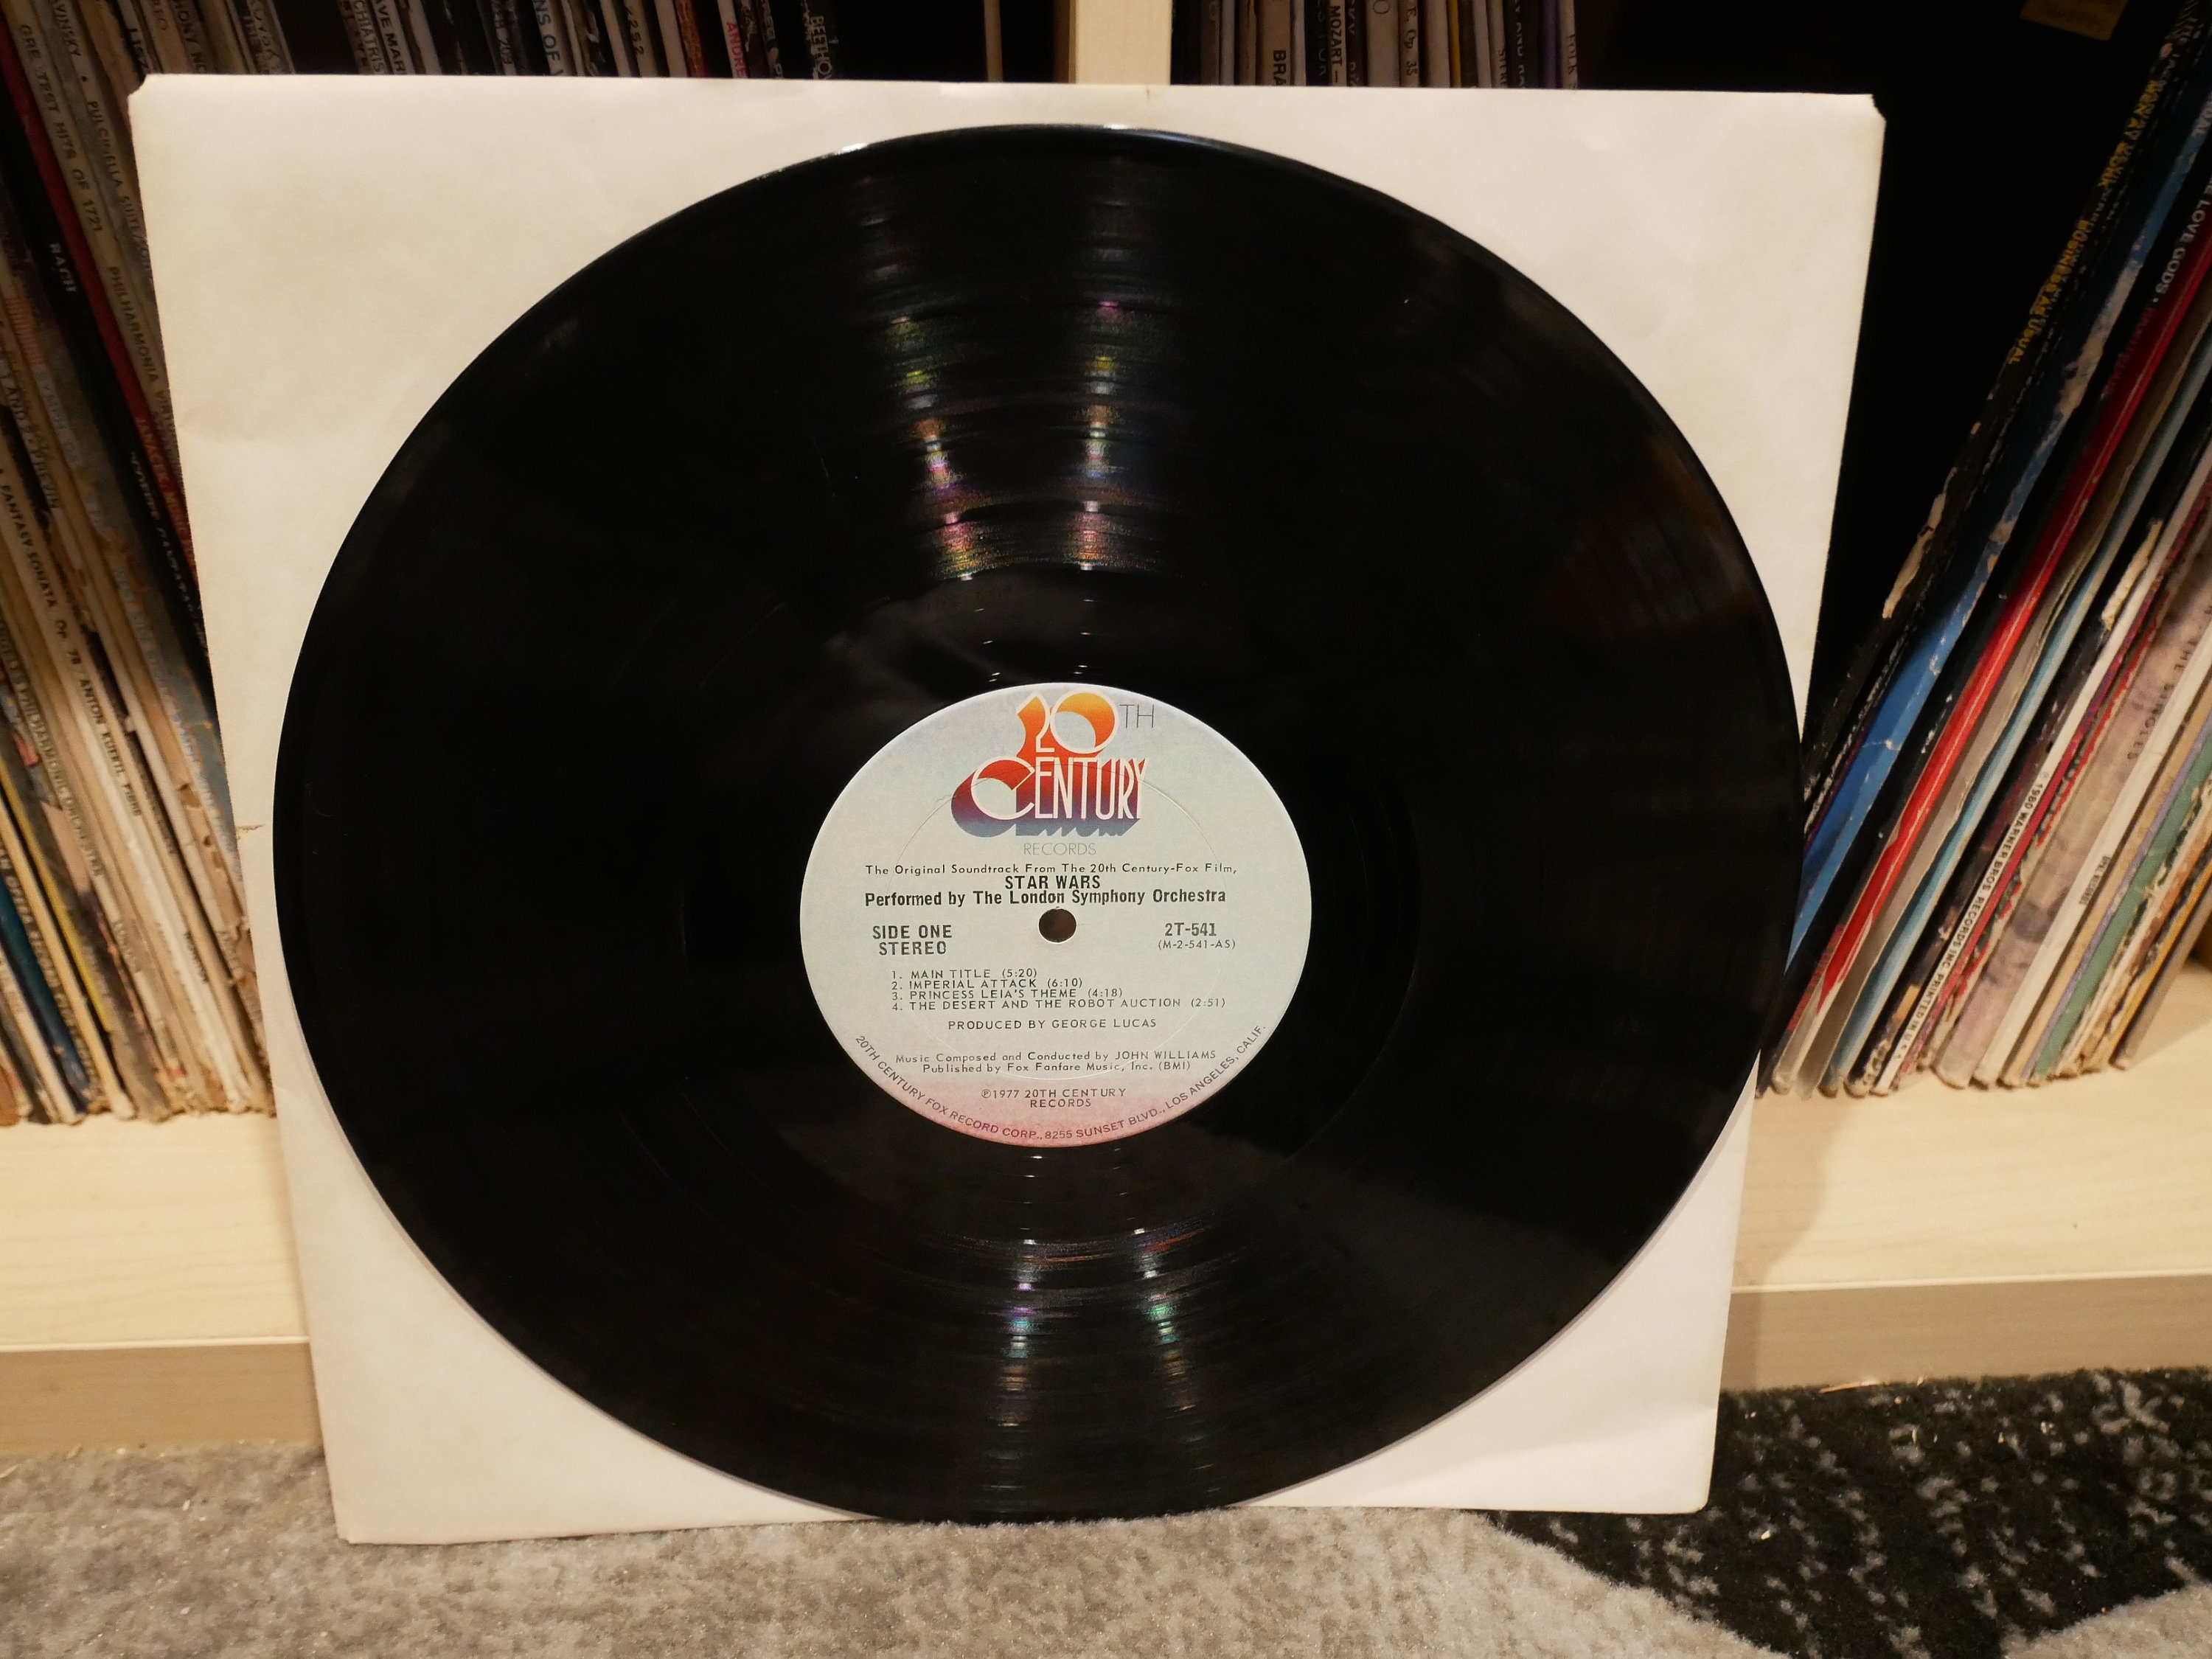 Las mejores ofertas en Queen bueno Plus (G +) discos de vinilo LP de  Clasificación